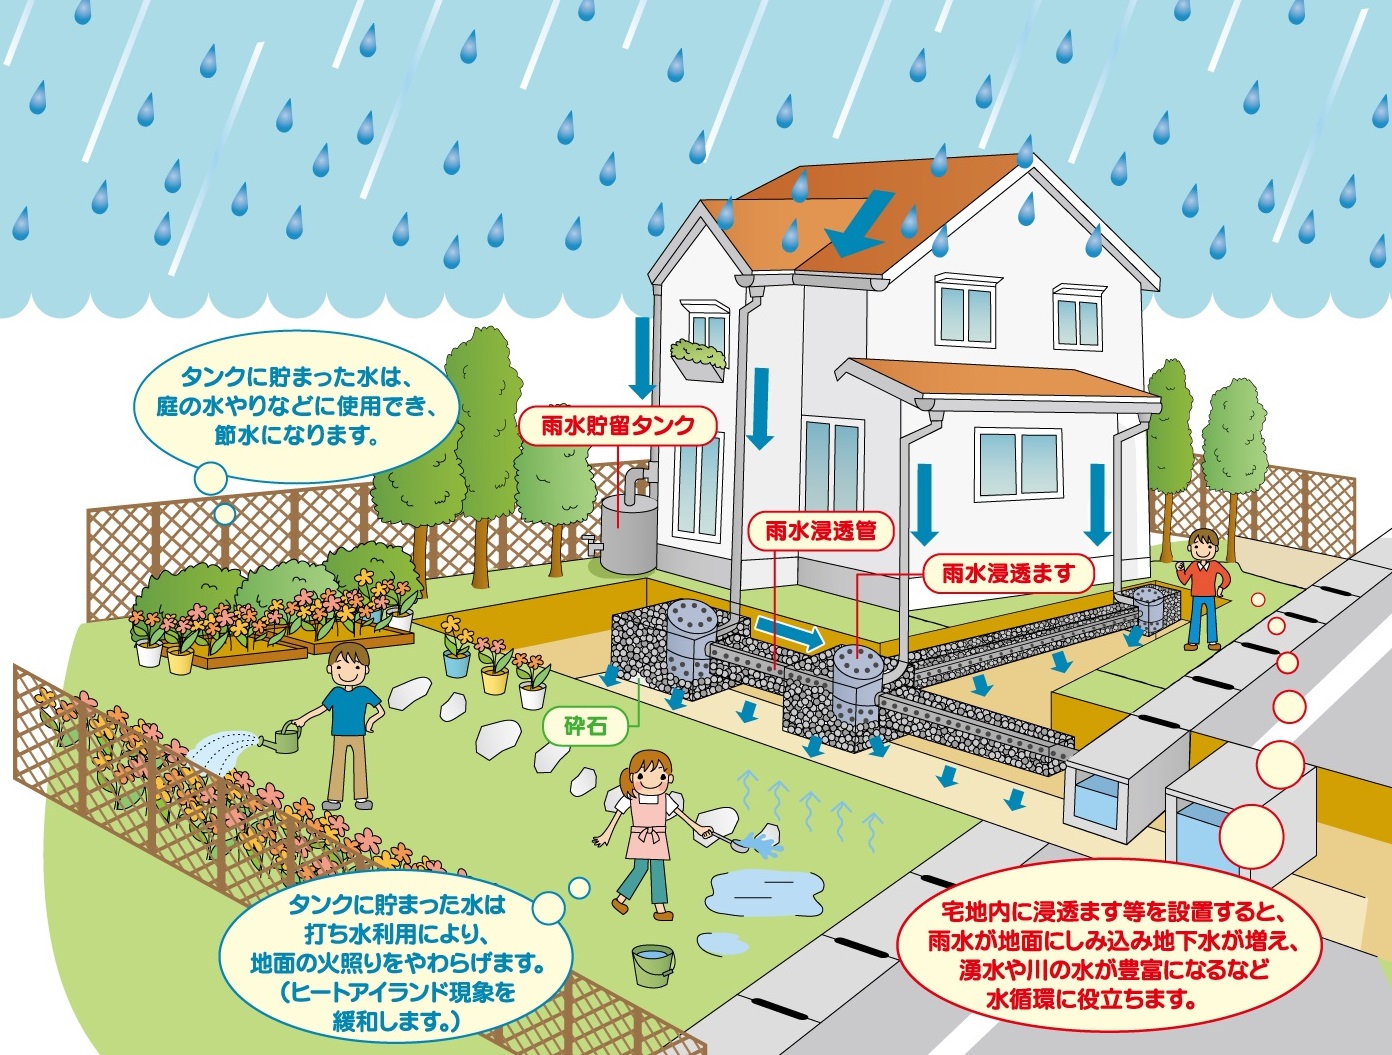 雨水貯留タンク、雨水浸透ますの家庭での活用例の説明画像